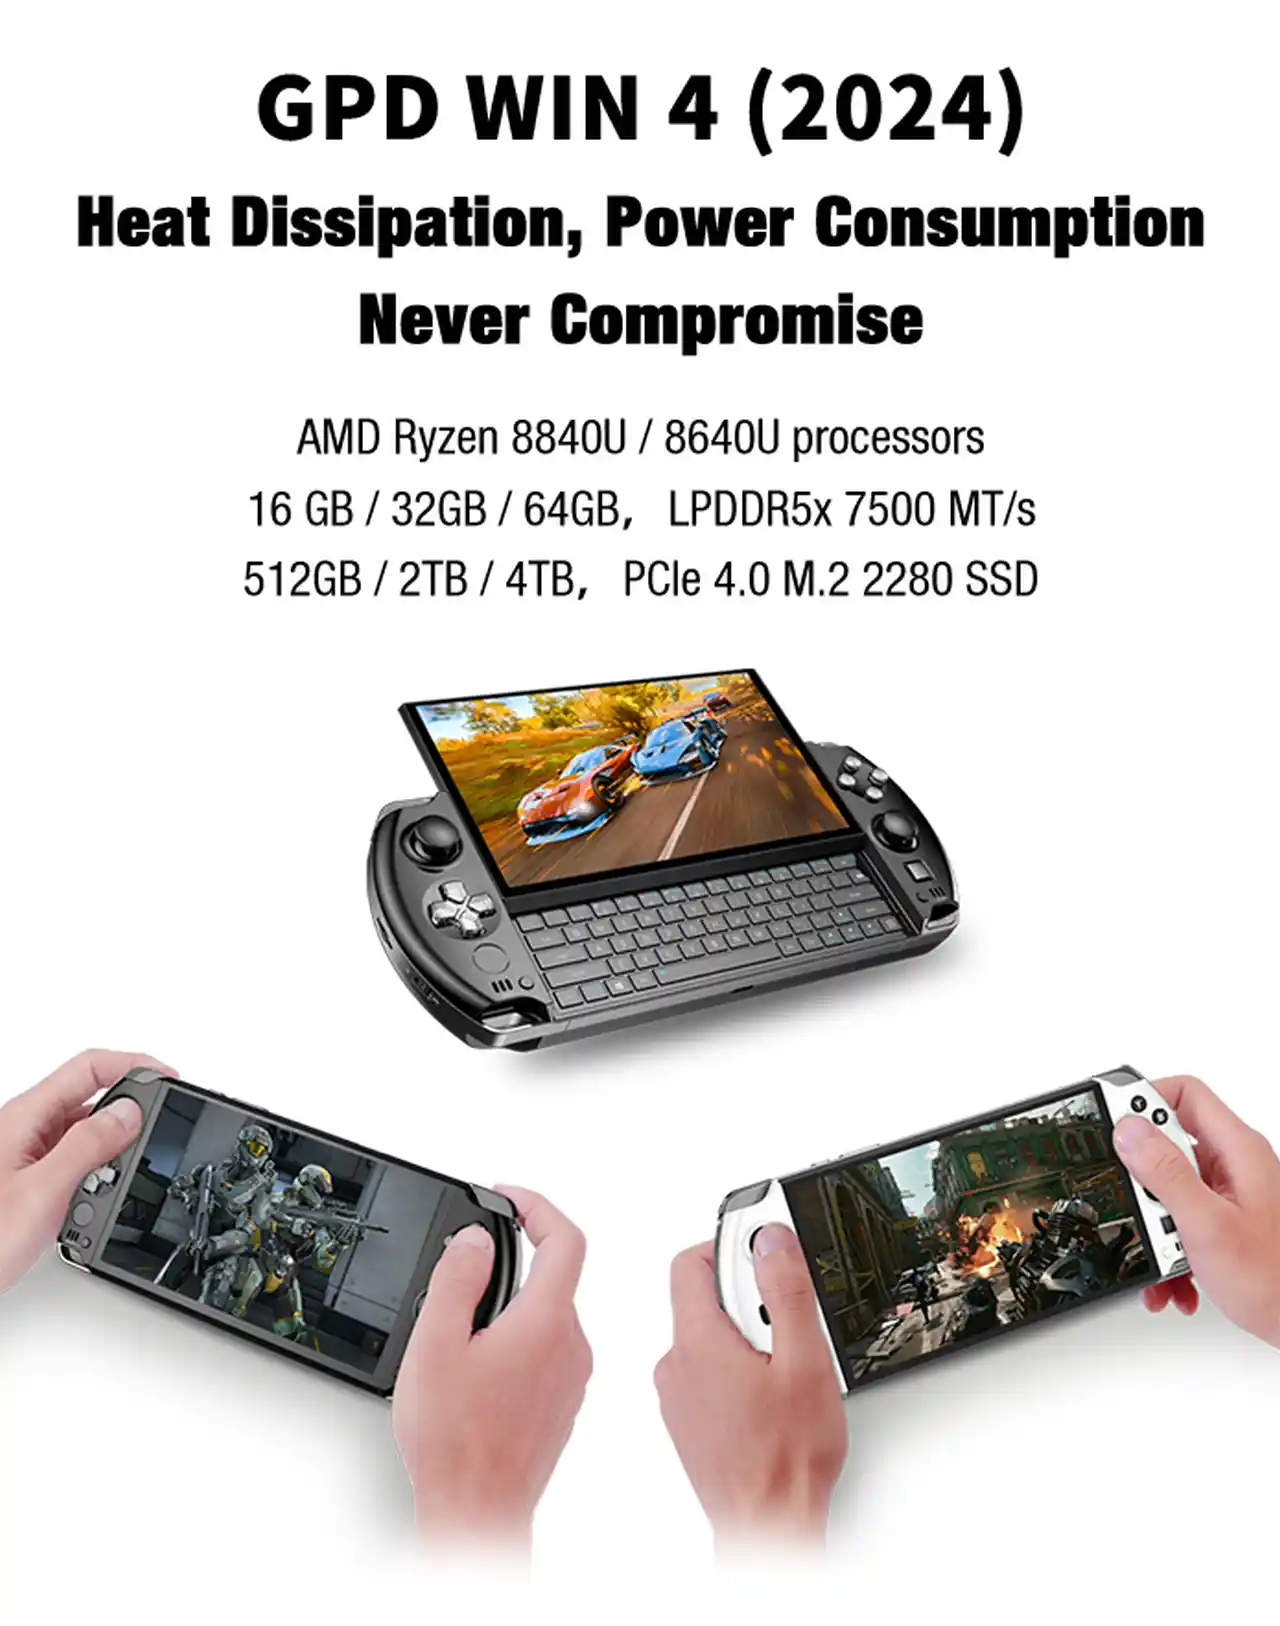 GPD Win 4 2024 sarà la prima console portatile con Ryzen 7 8840U - surclassa Ryzen Phoenix e Steam Deck a 10 watt